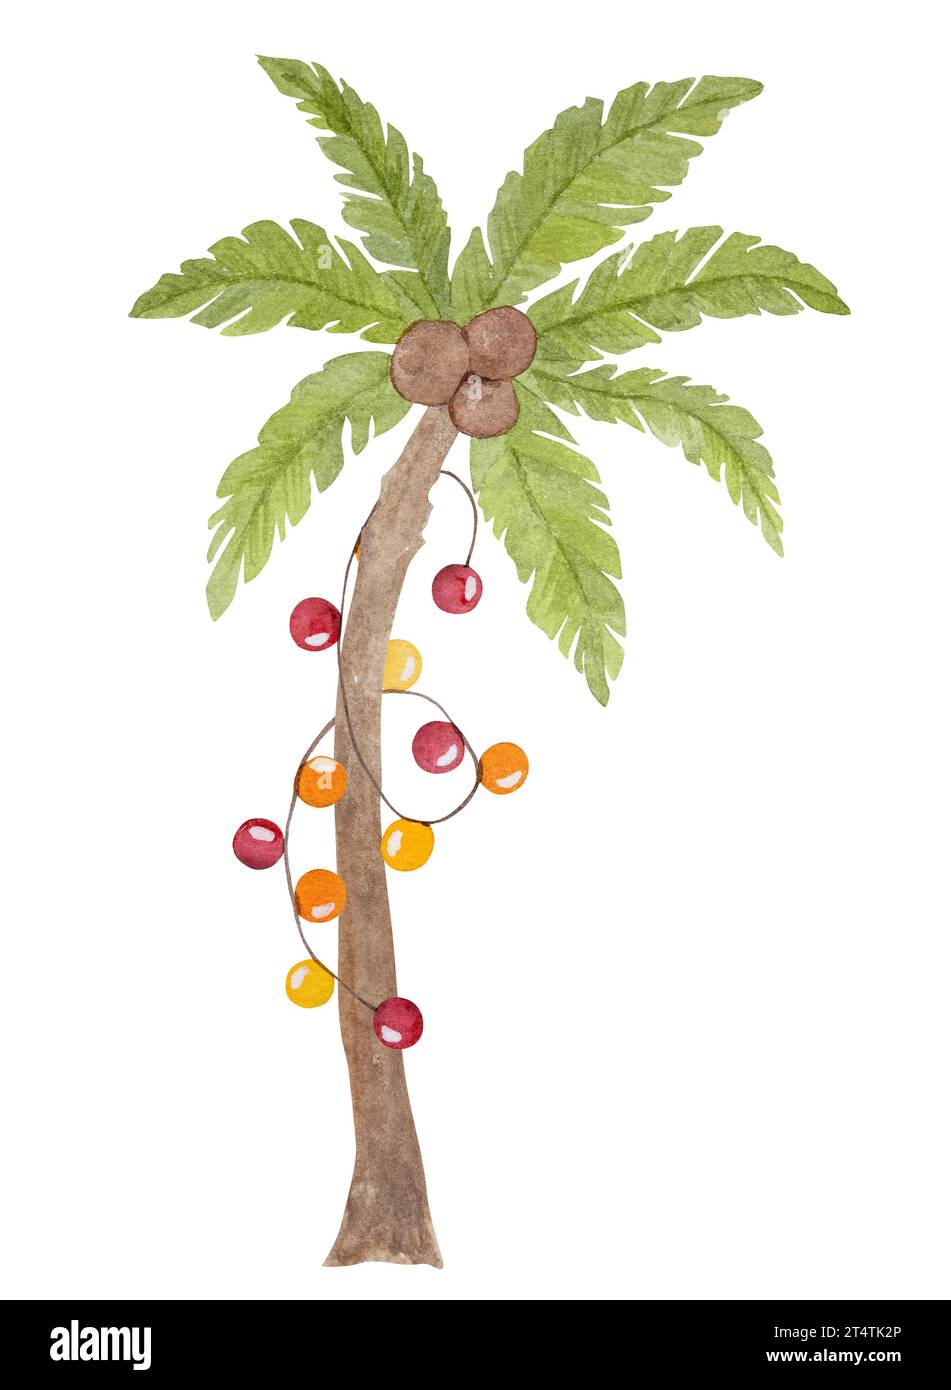 Peinture aquarelle joyeuse de noël des Caraïbes avec palmiers arbre de Noël, cactus et chapeau de santa. Carte postale du nouvel an sur la plage tropicale Banque D'Images